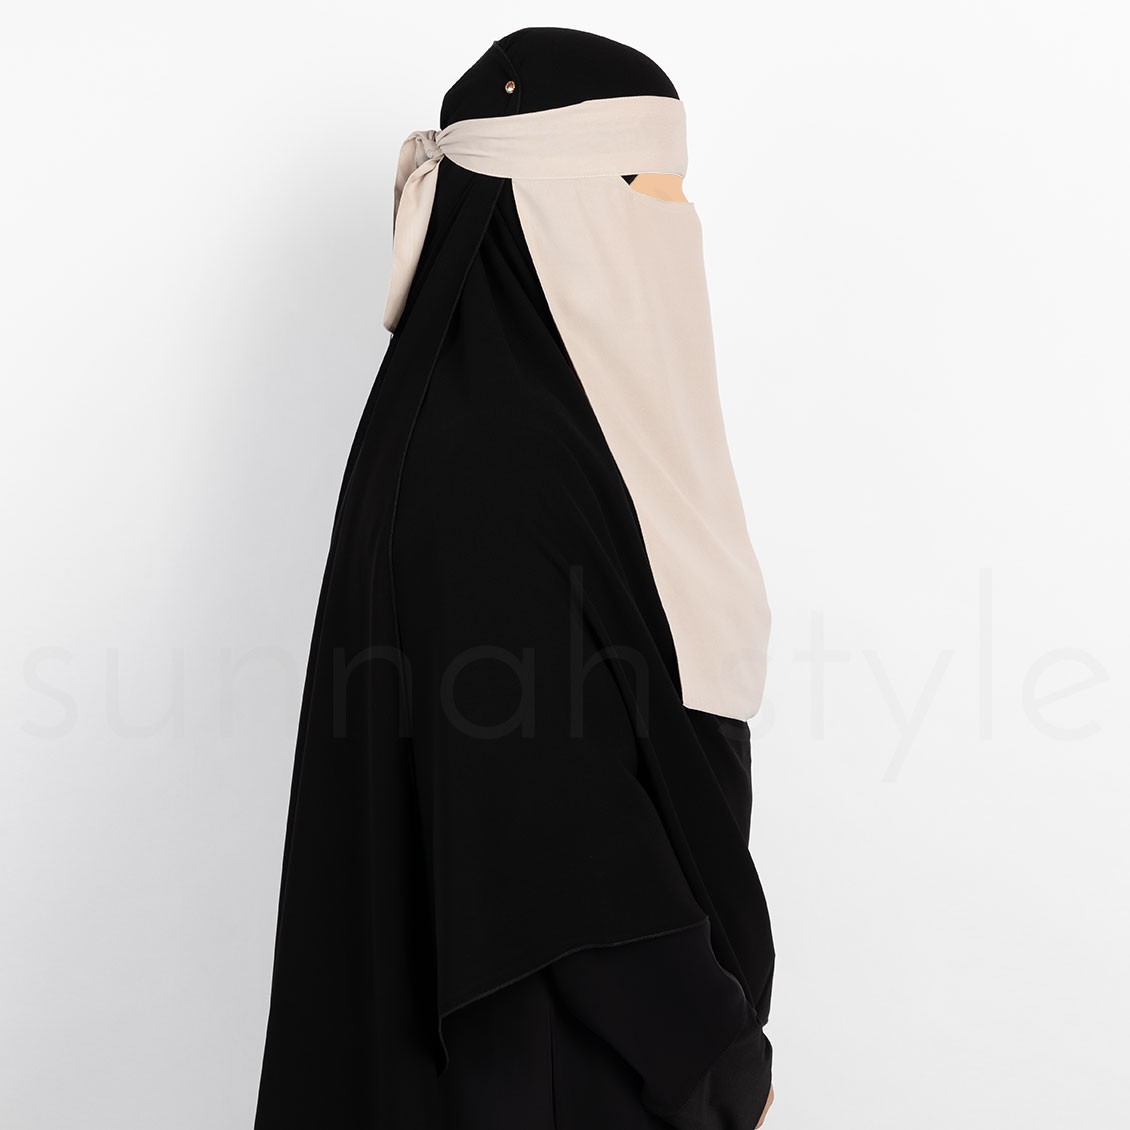 Sunnah Style Narrow No-Pinch One Layer Niqab Sahara